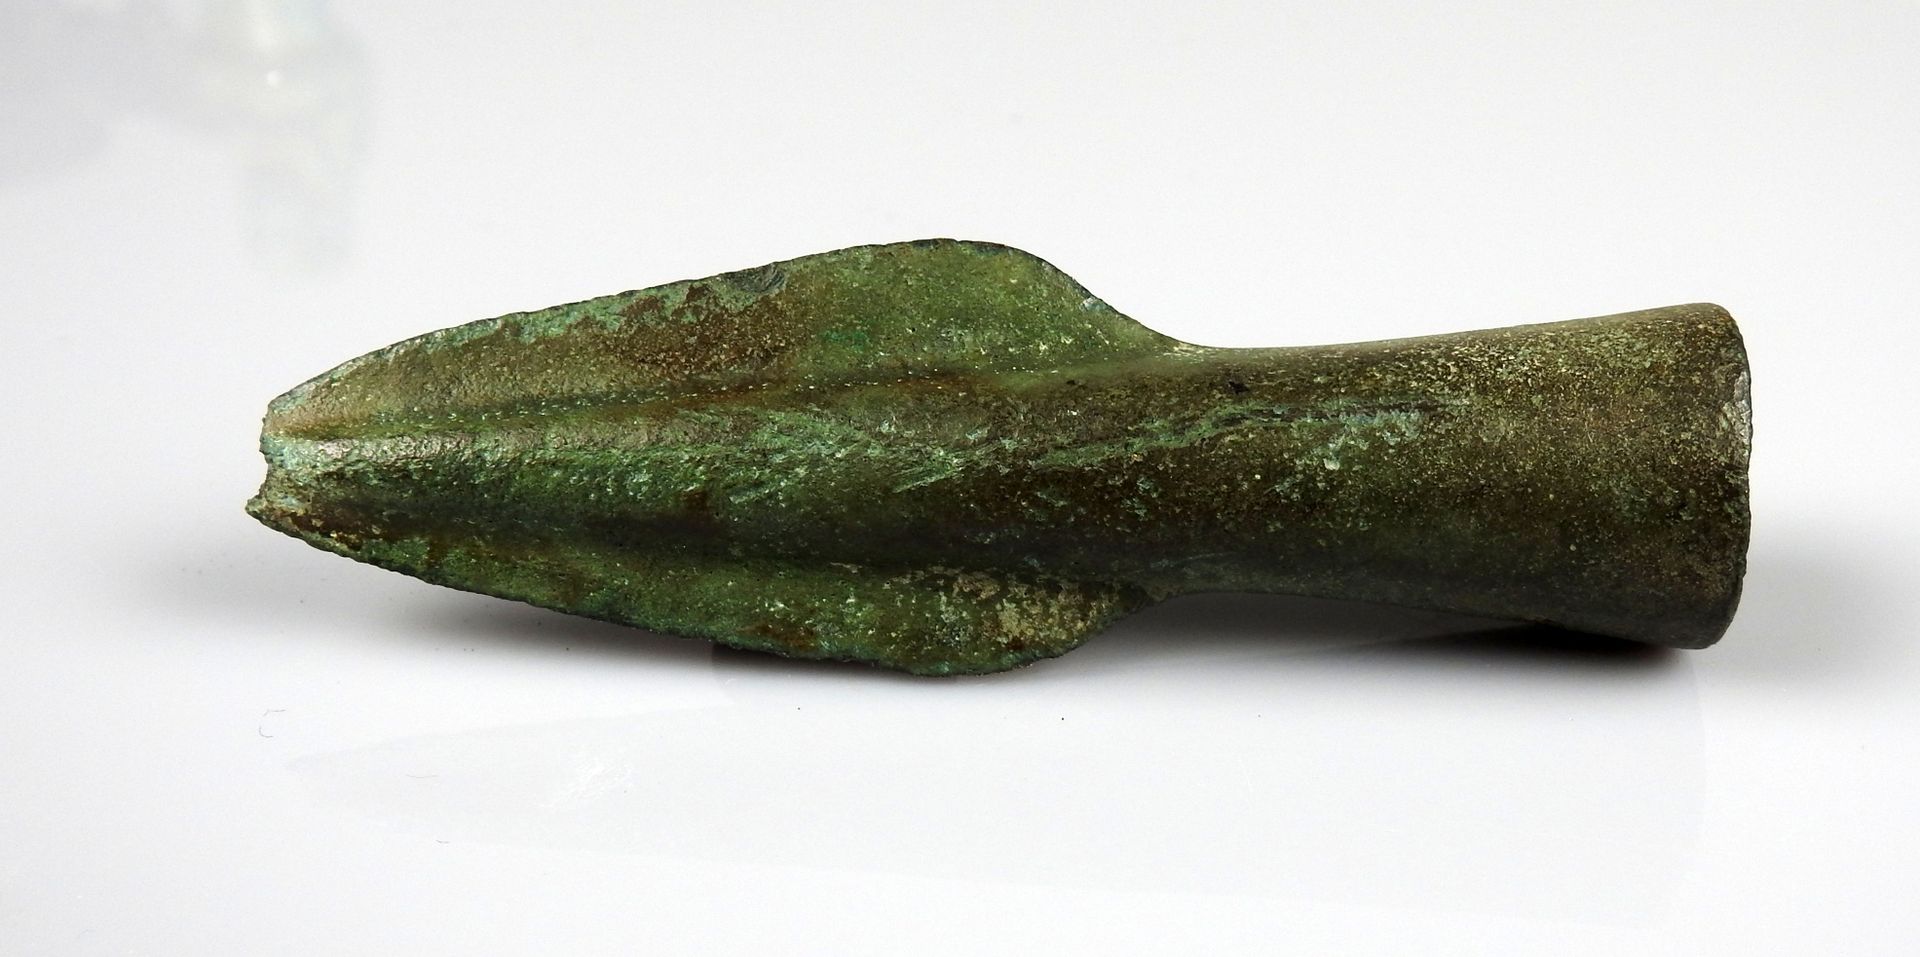 Null 带插座的矛头

前19世纪某省著名人士的收藏

青铜9.2厘米

青铜时代晚期